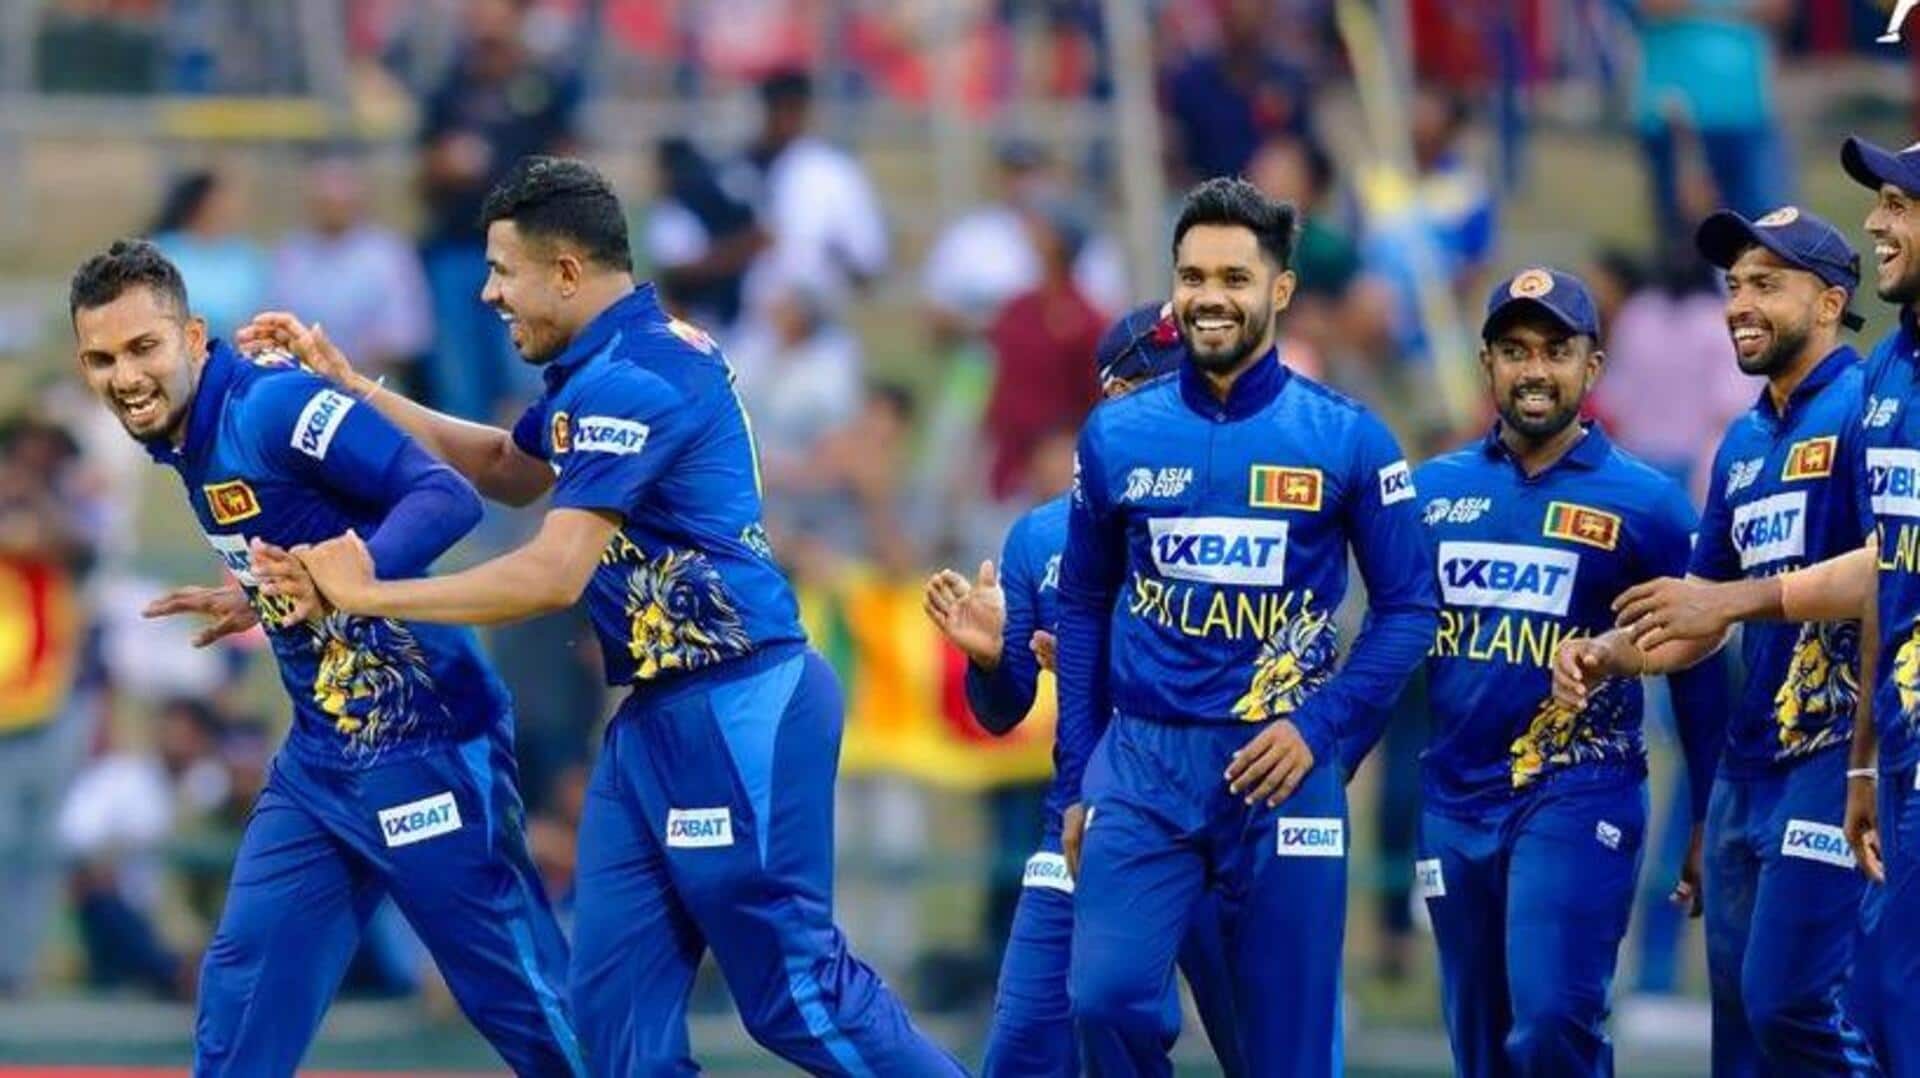 श्रीलंका बनाम बांग्लादेश: दासुन शनाका ने चटकाए 3 विकेट, जानिए उनके आंकड़े